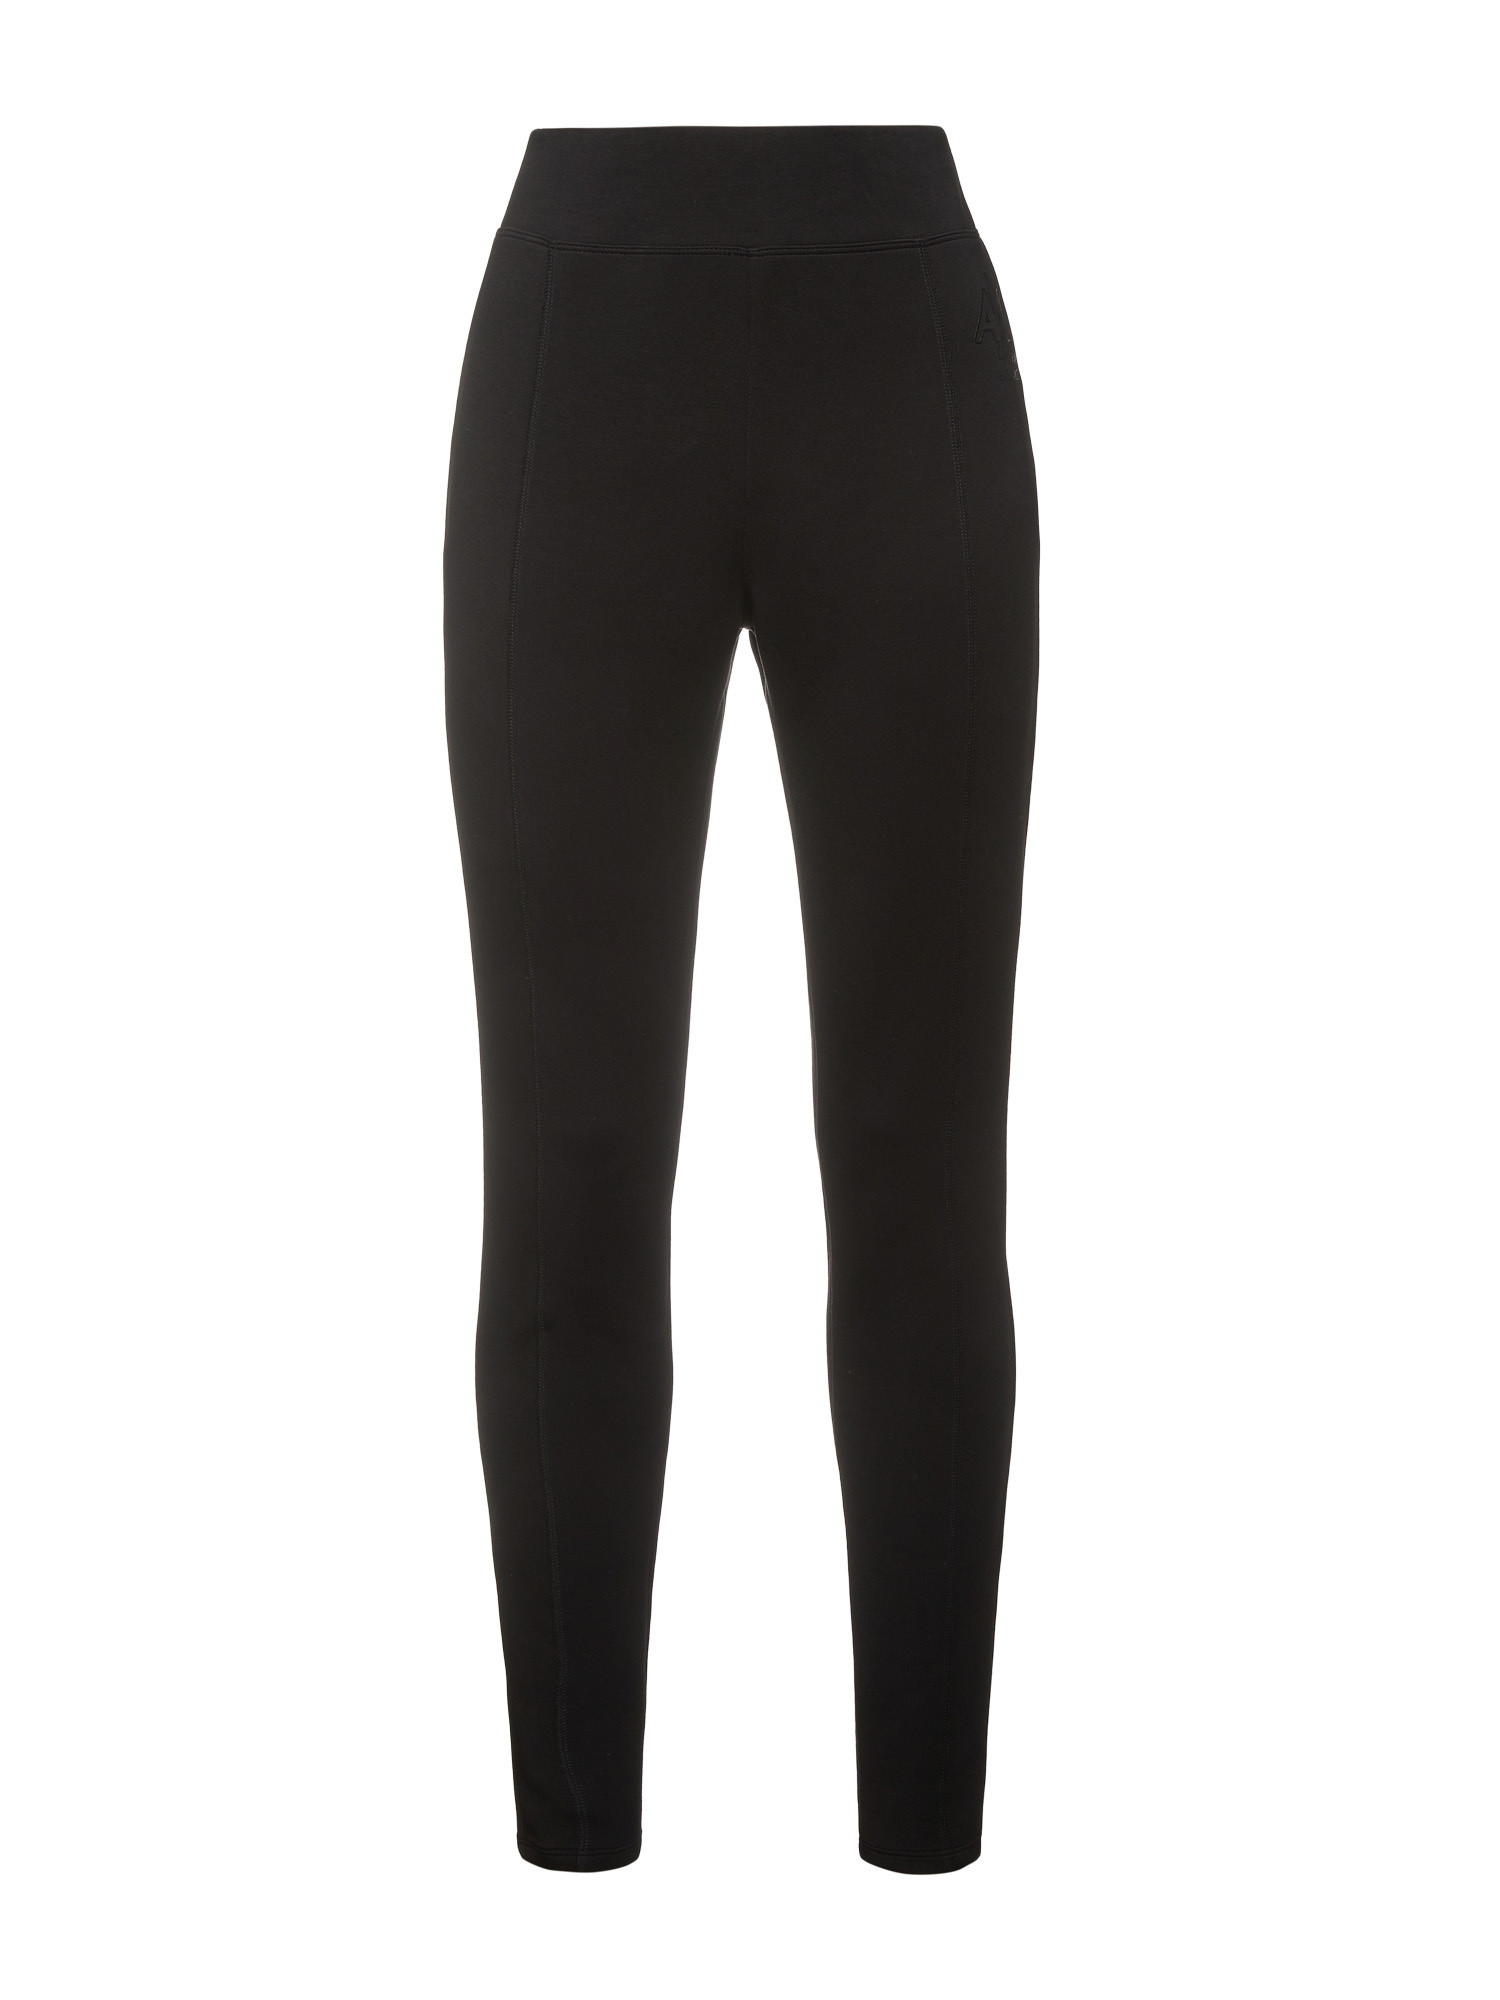 Armani Exchange - Logo leggings, Black, large image number 0